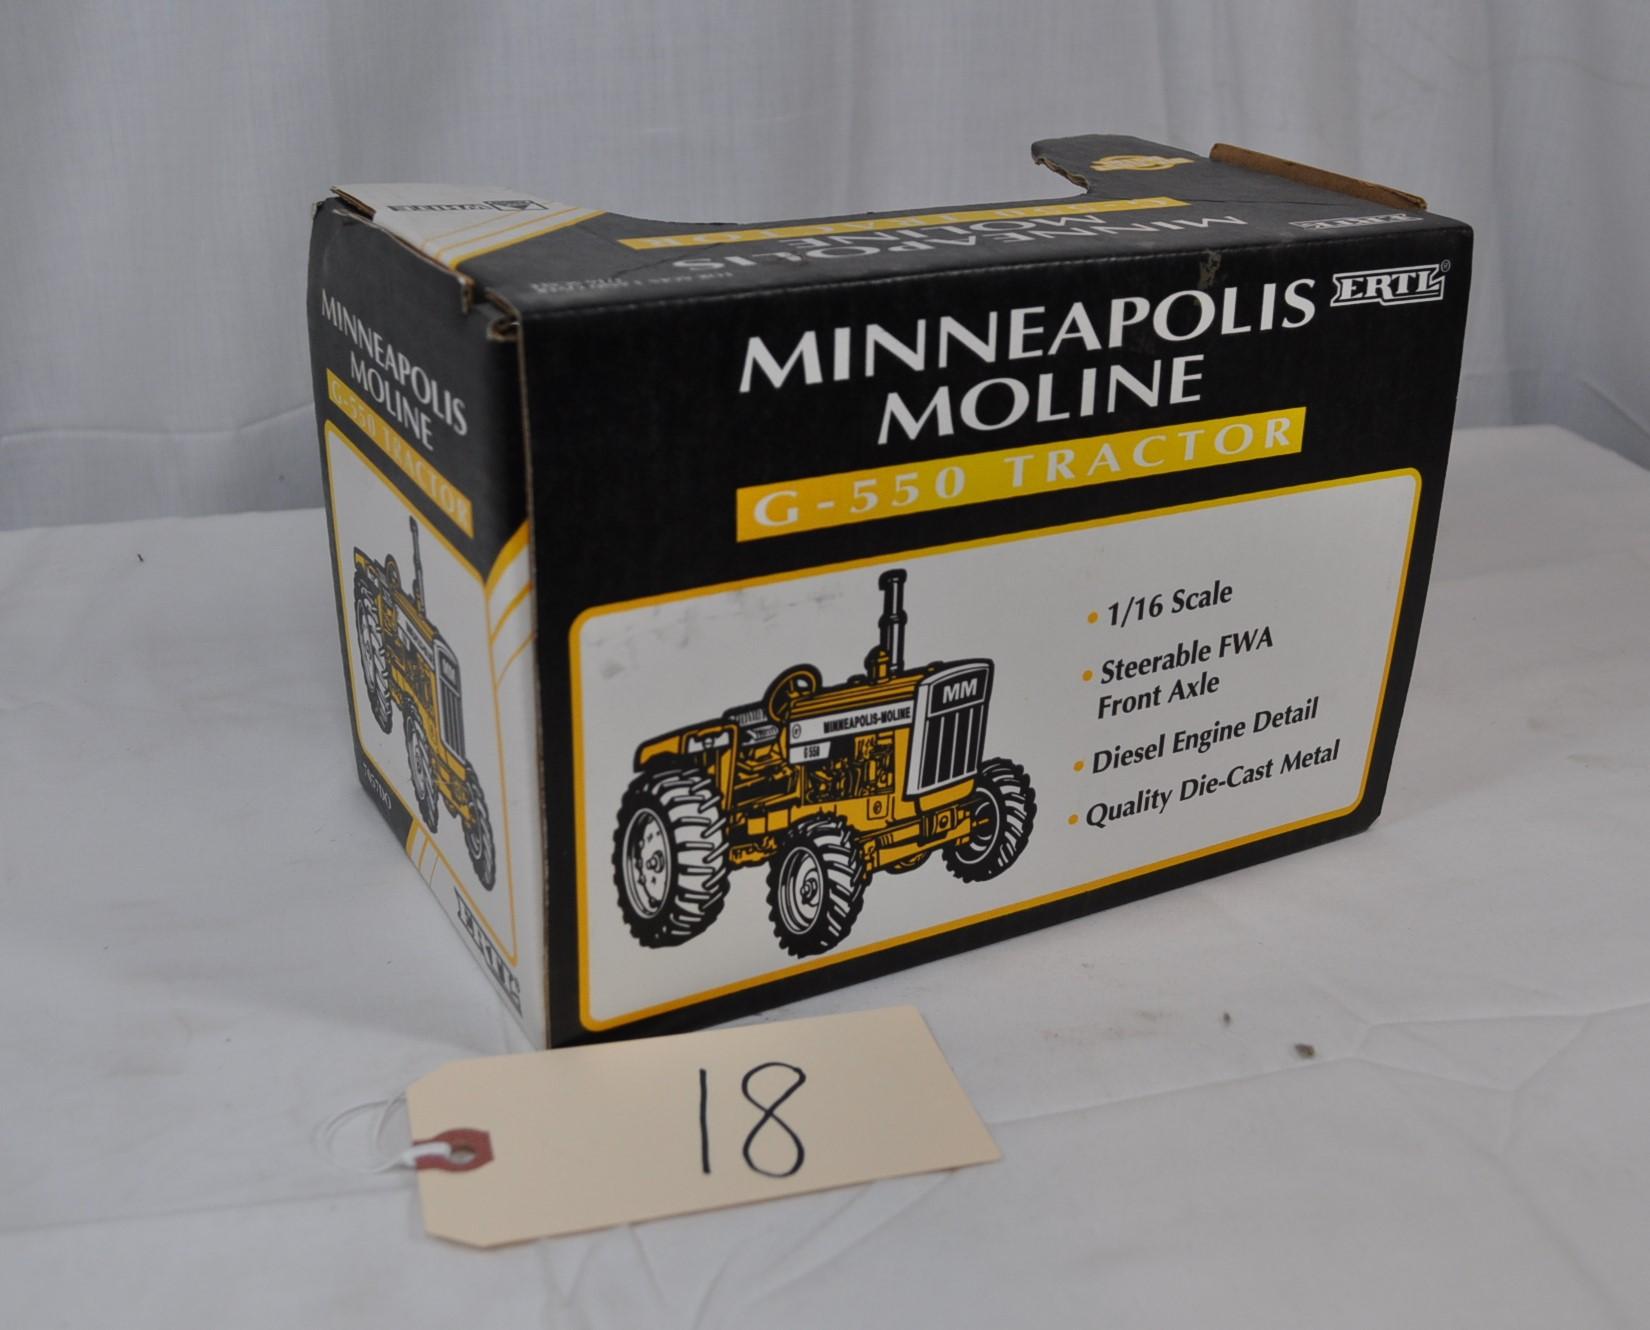 Ertl Minneapolis-Moline G-550 - 1/16th scale